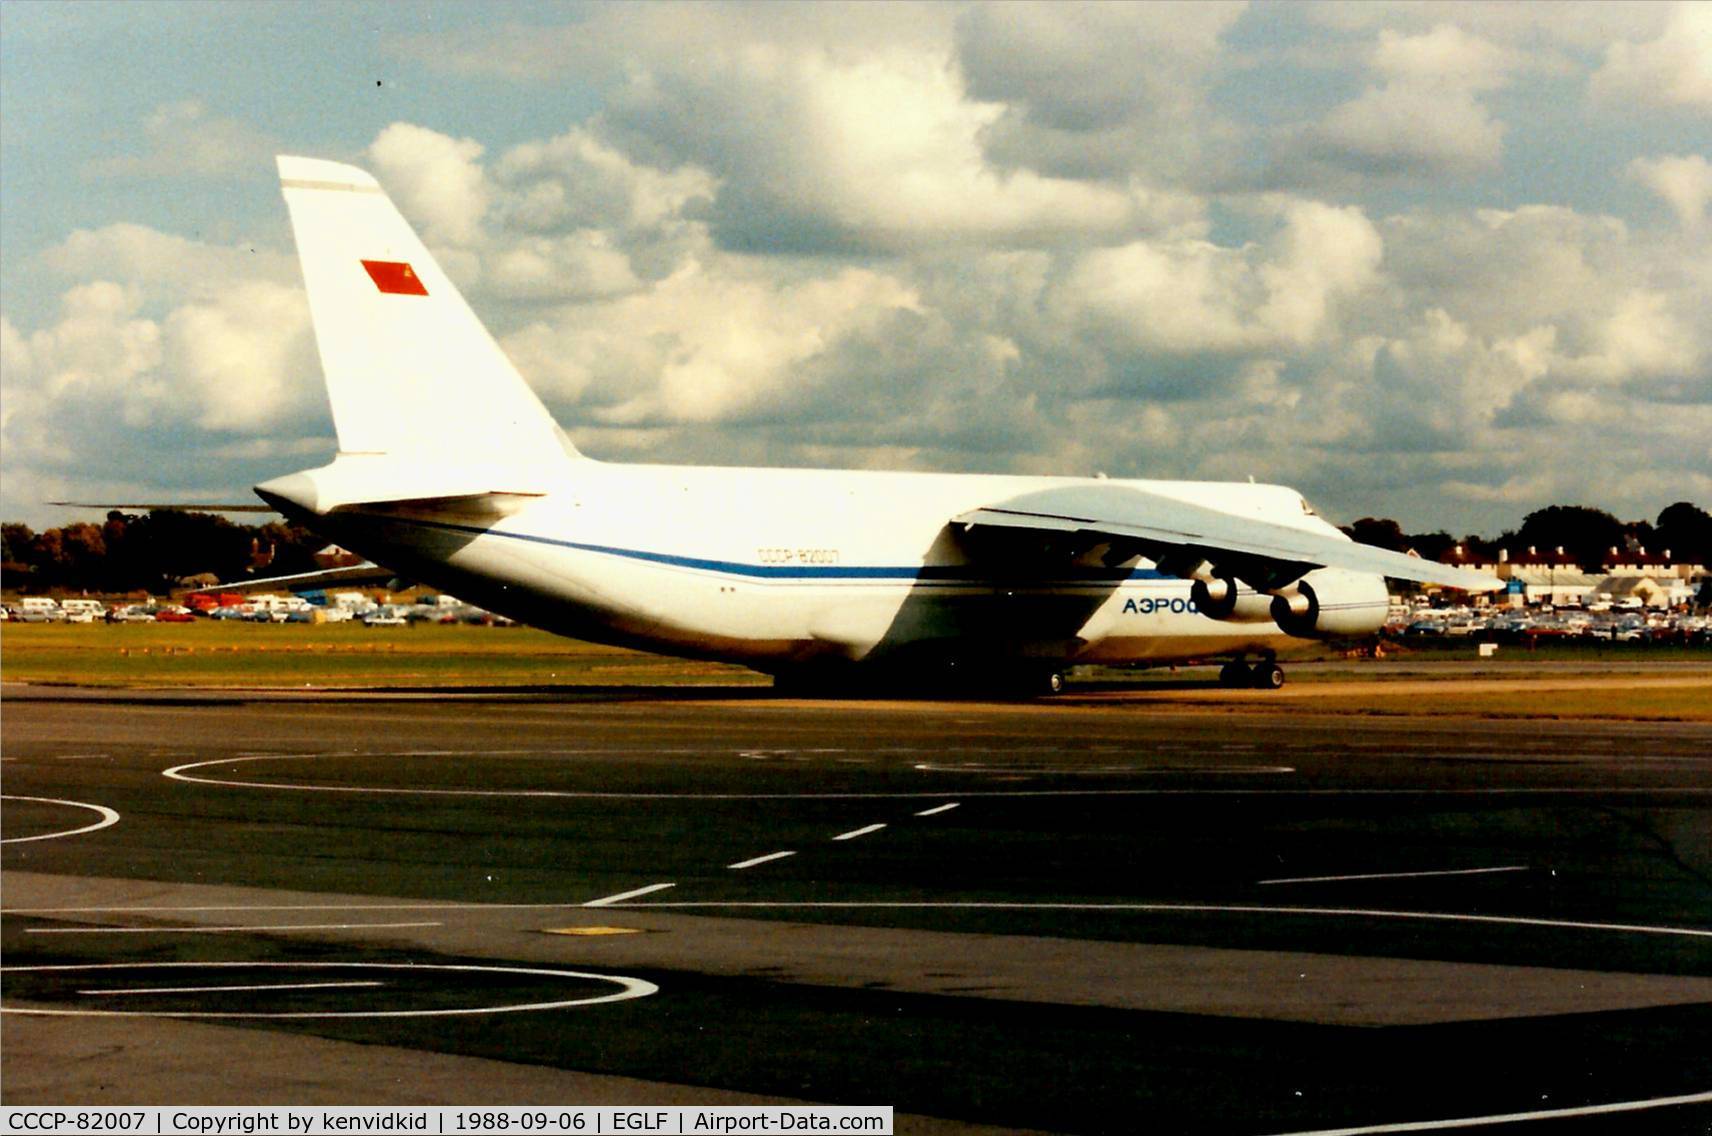 CCCP-82007, 1988 Antonov An-124-100 Ruslan C/N 19530501005, At the 1988 Farnborough International Air Show.